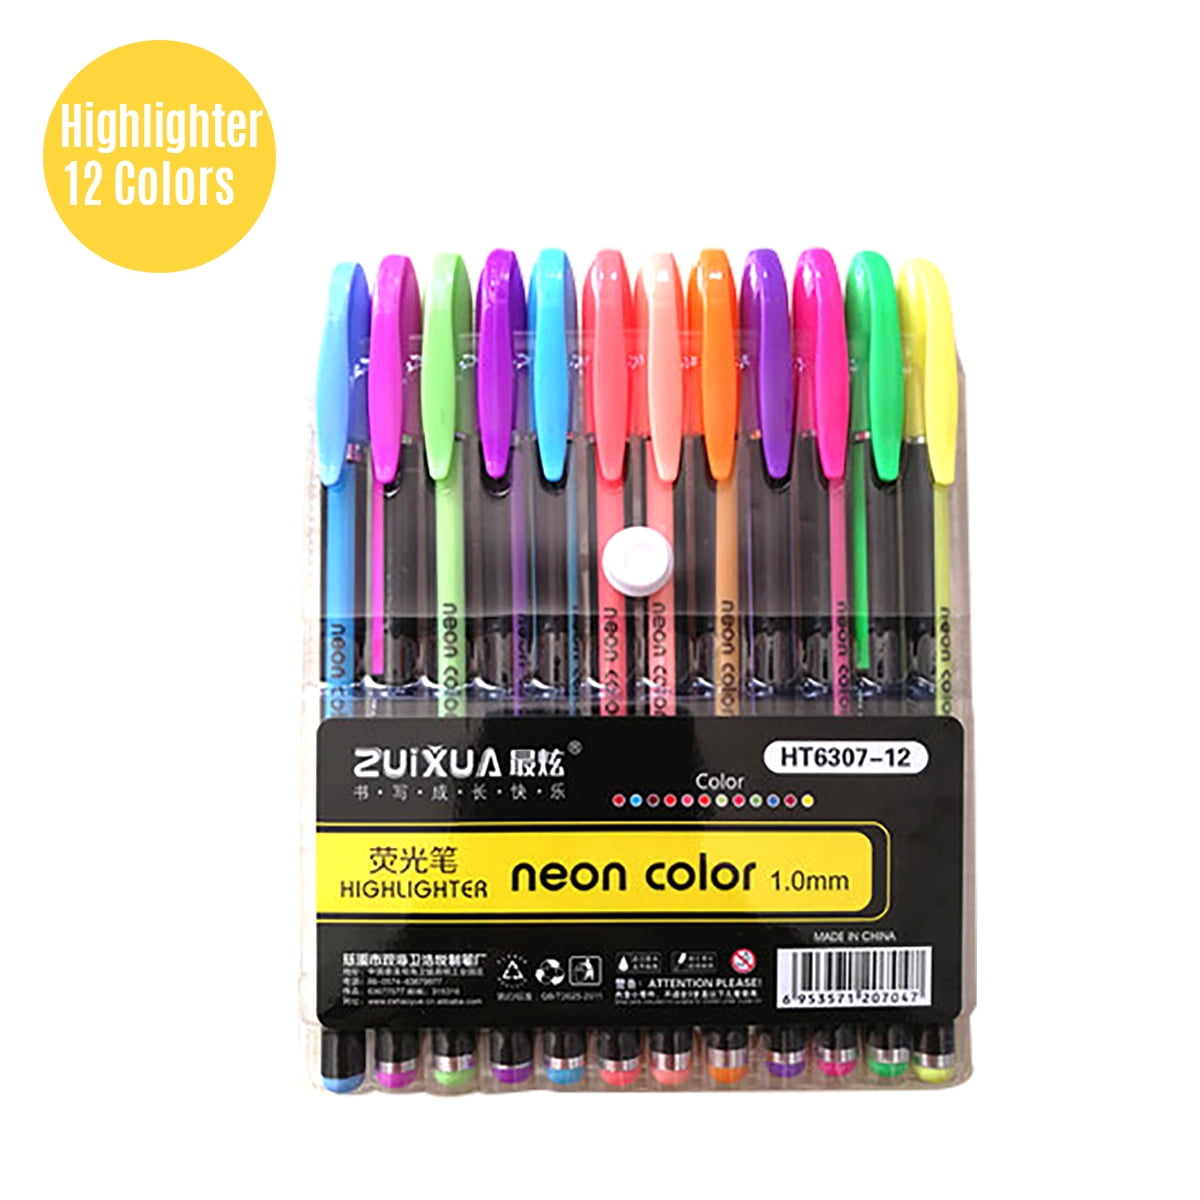 12Pcs/set Multicolor Gel Pen Draw Colored Painting Pens Student School Supplies 